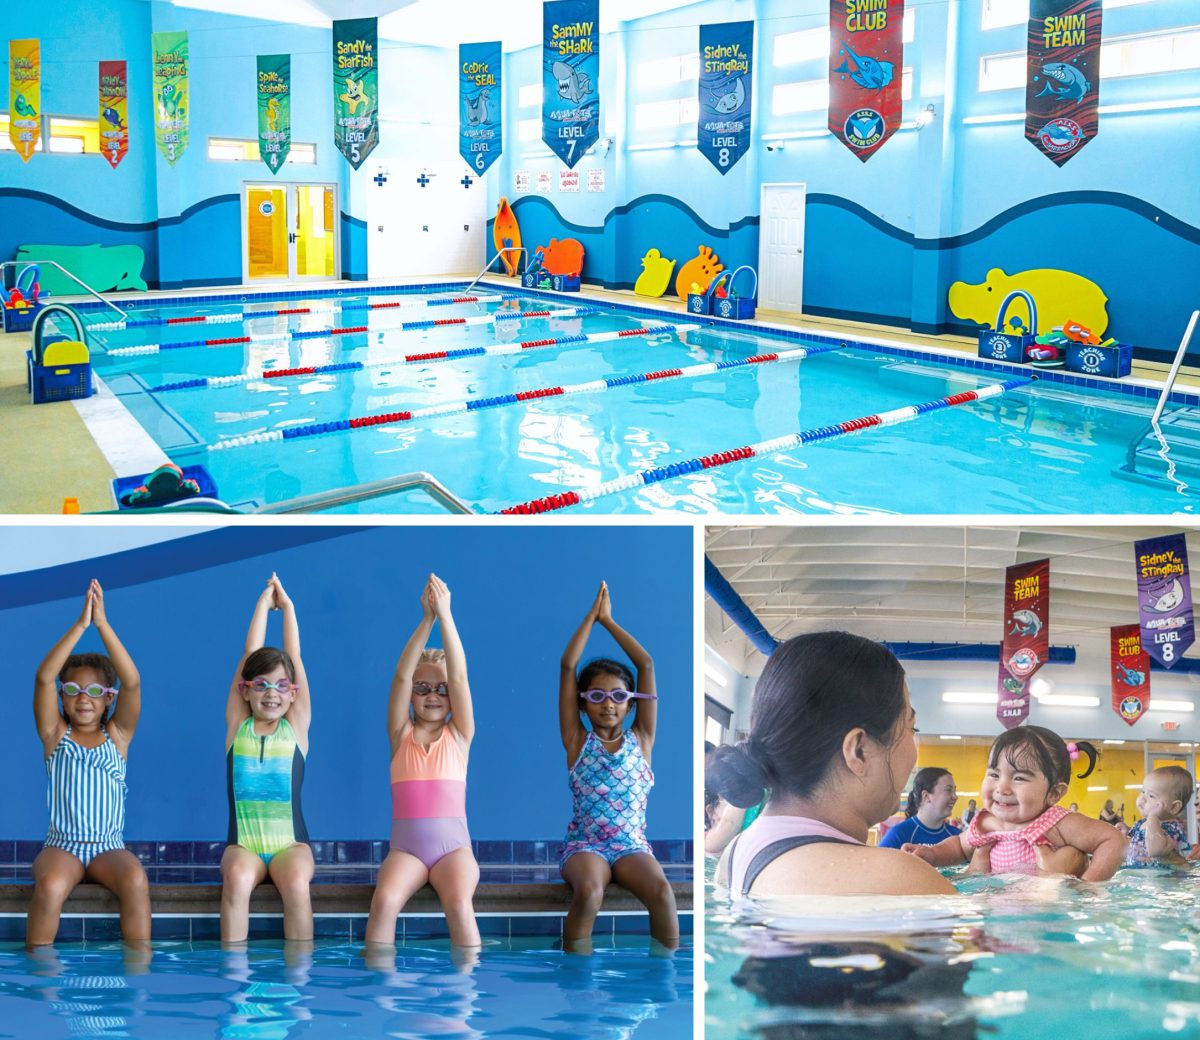 Aqua-Tots Swim Schools แฟรนไชส์โรงเรียนสอนว่ายน้ำระดับโลก บุกตลาดไทย การันตีด้วยคลาสเรียน 42 ล้านครั้ง ด้วยประสบการณ์ยาวนานกว่า 30 ปี